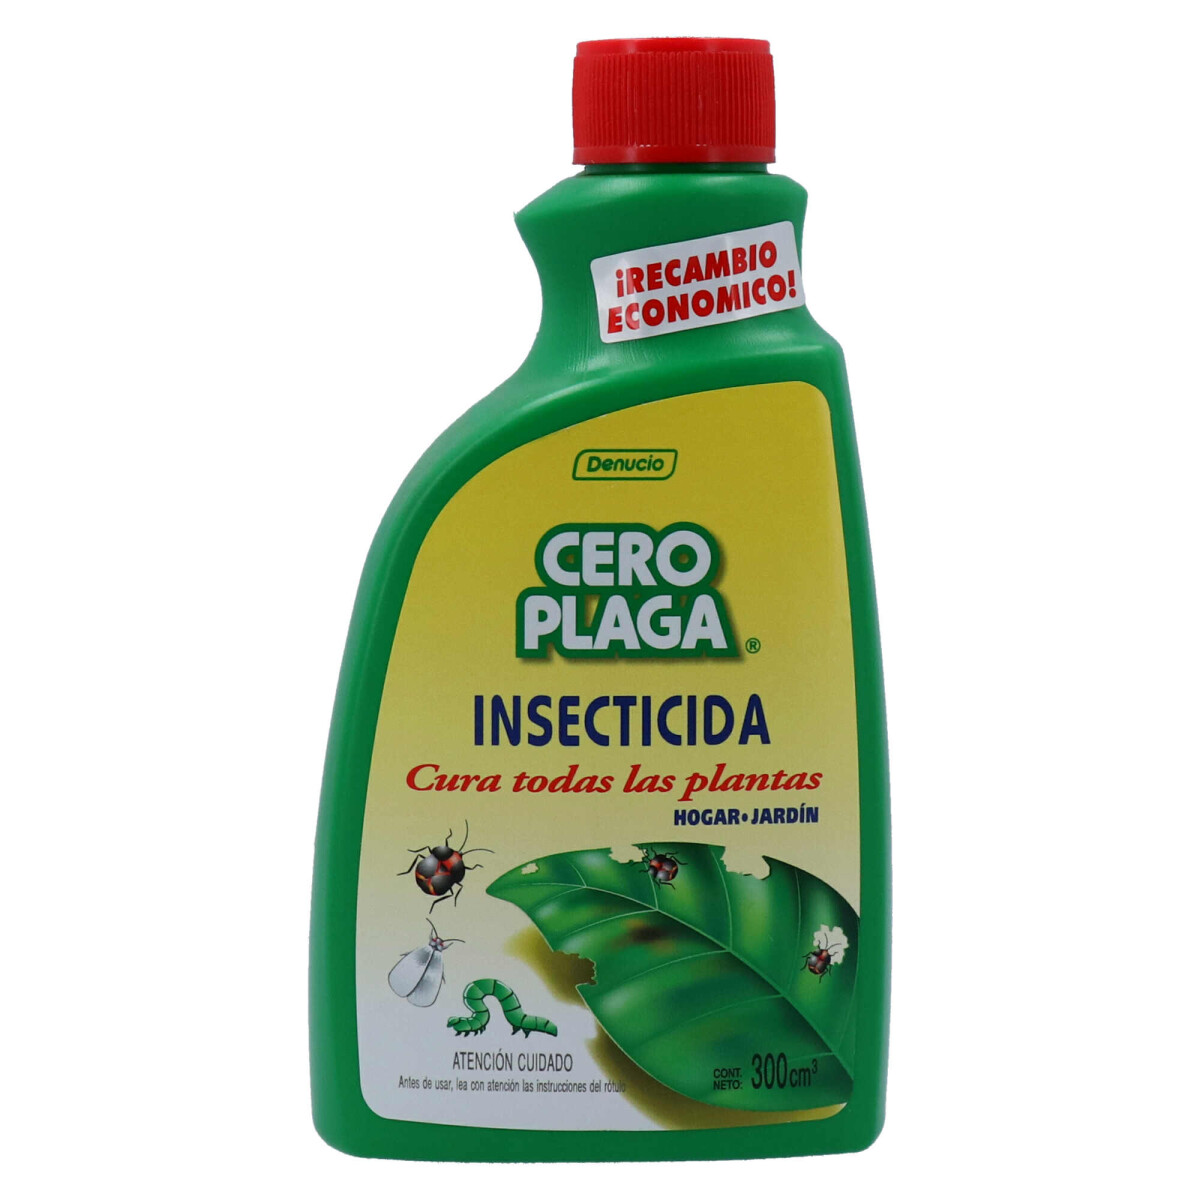 CERO PLAGA Insecticida - Recambio 300cc 